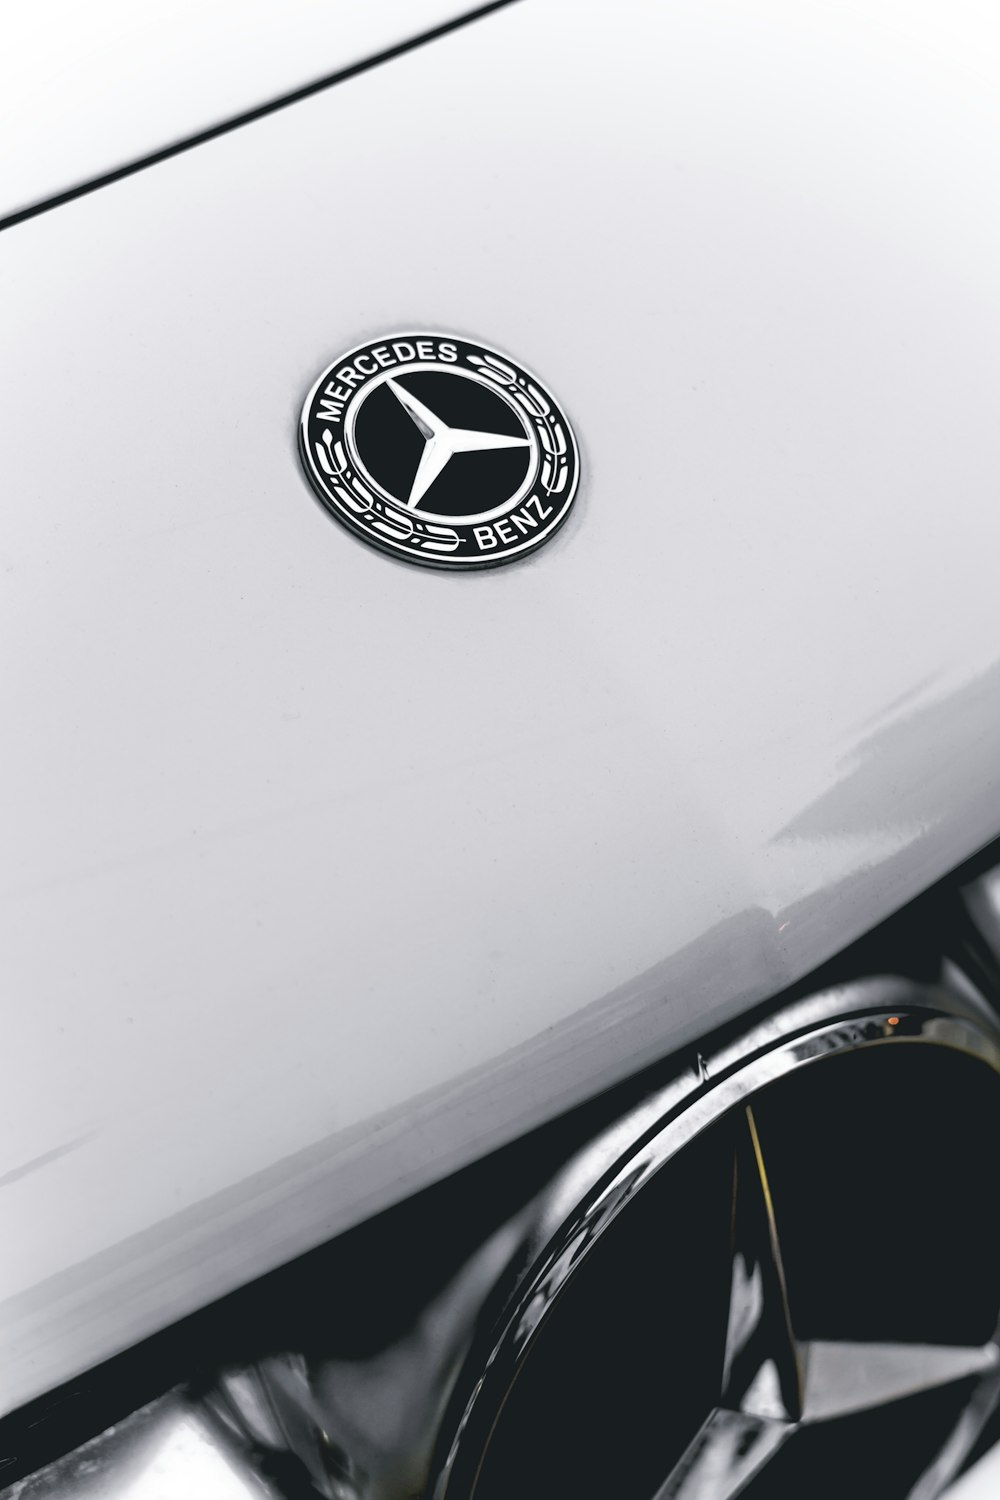 Um close up de um emblema da Mercedes em um carro